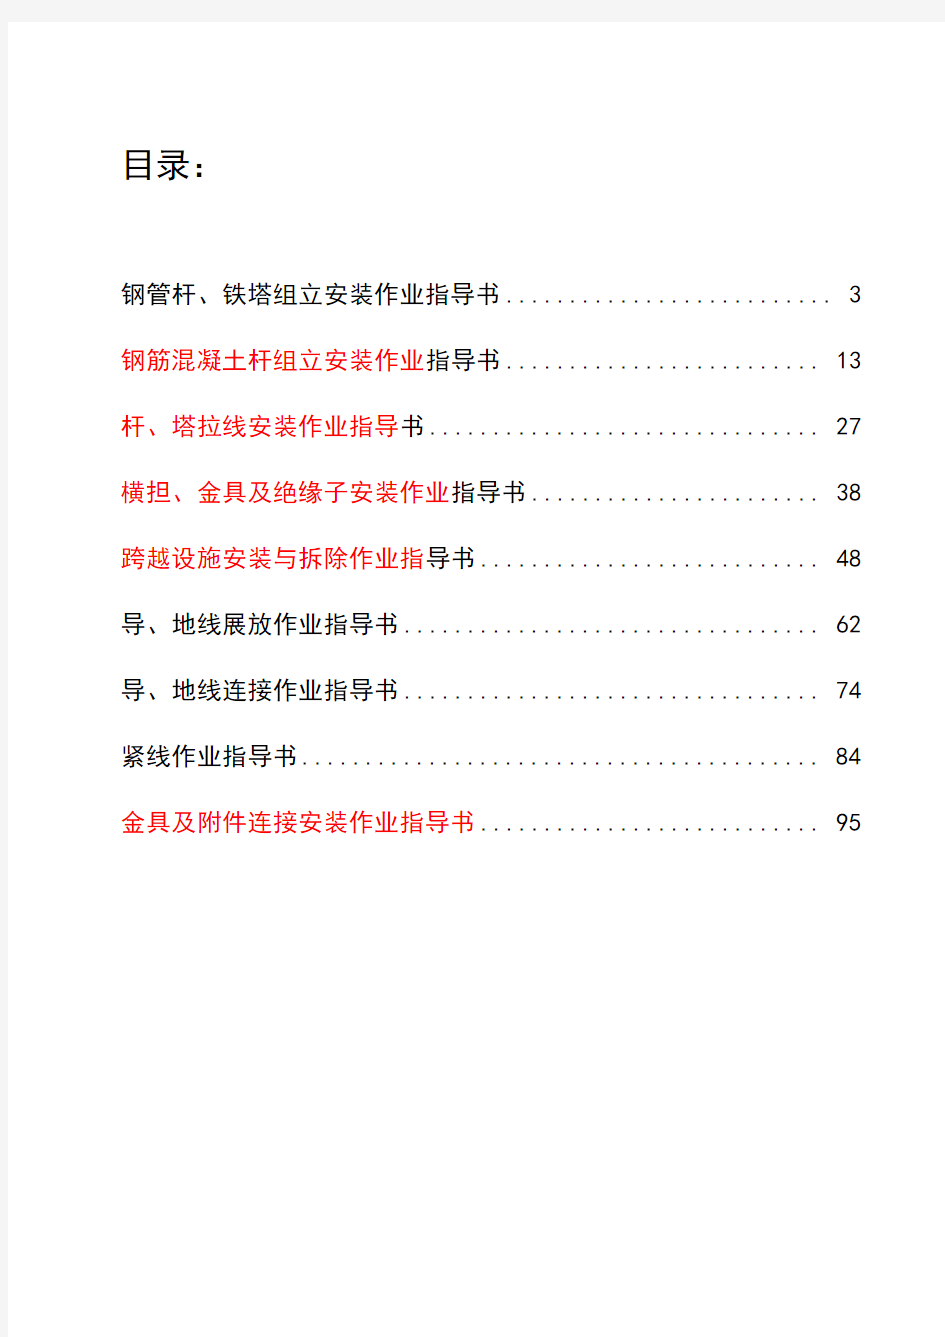 中国南方电网有限责任公司电网建设施工作业指导书(配网部分)架空线路安装工程